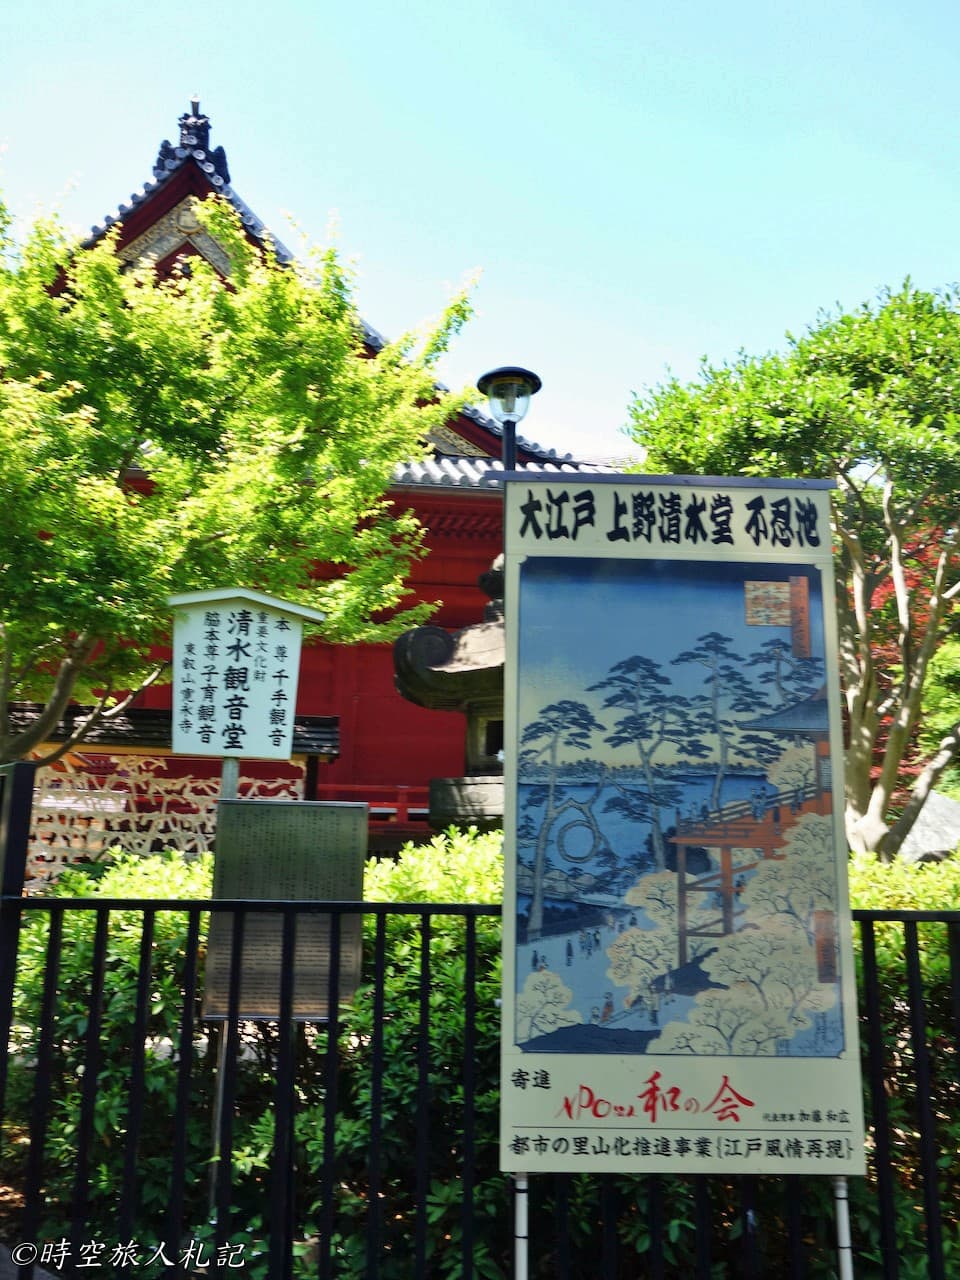 上野公園,上野東照宮,花園稻荷神社,五重塔,不忍池 11